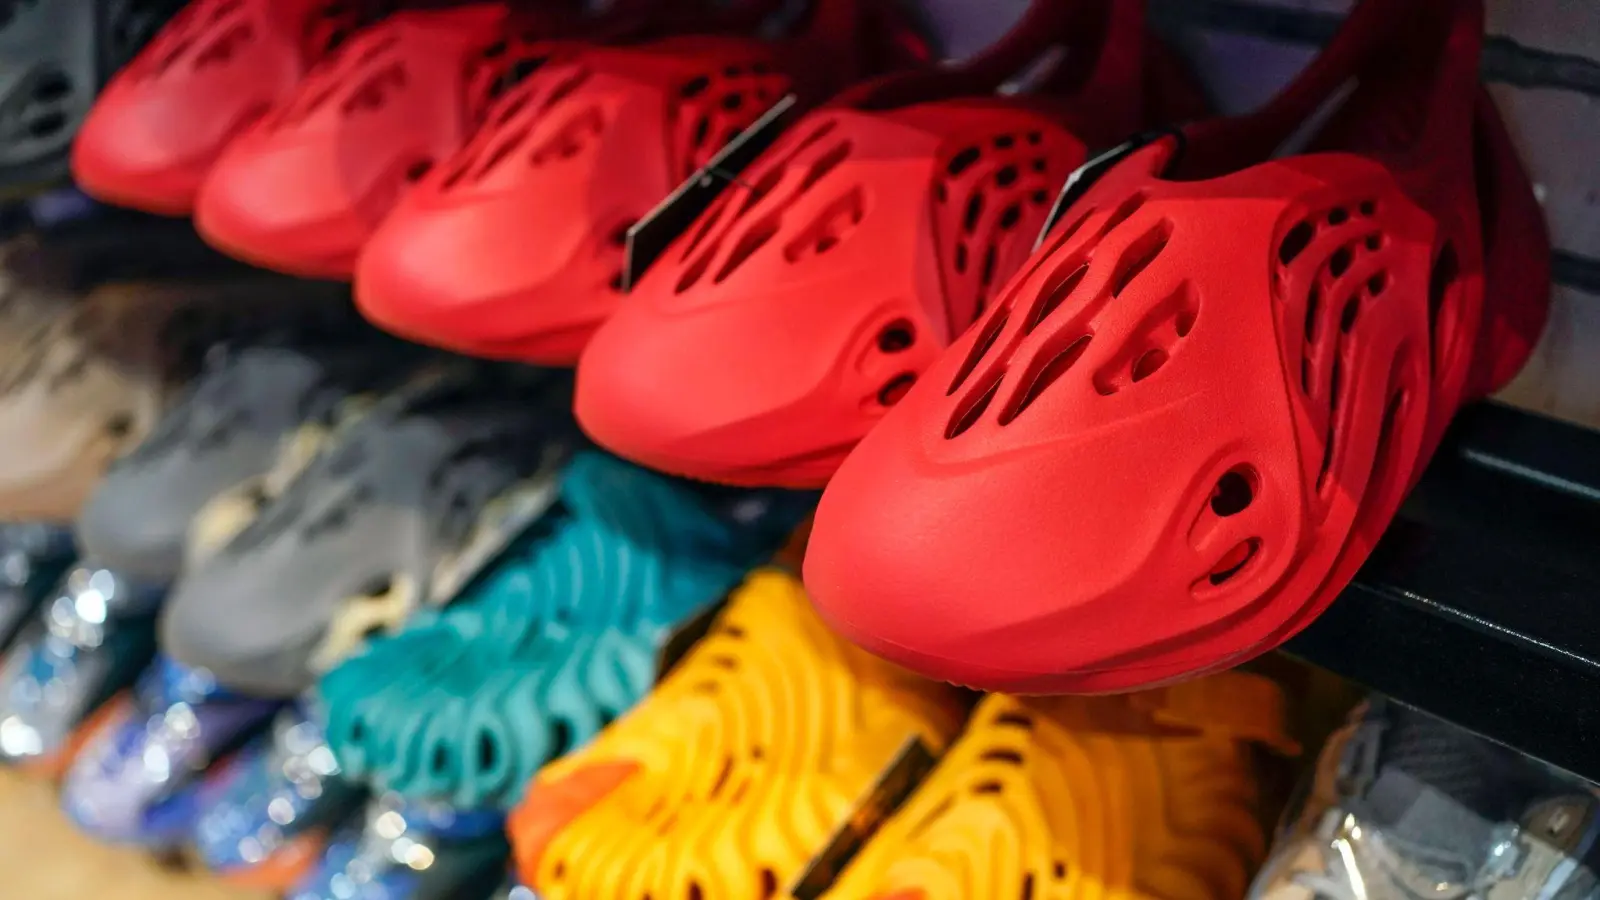 Yeezy-Schuhe von Adidas werden im Laced Up, einem Sneaker-Wiederverkaufsladen ausgestellt. (Foto: Seth Wenig/AP/dpa/Archivbild)